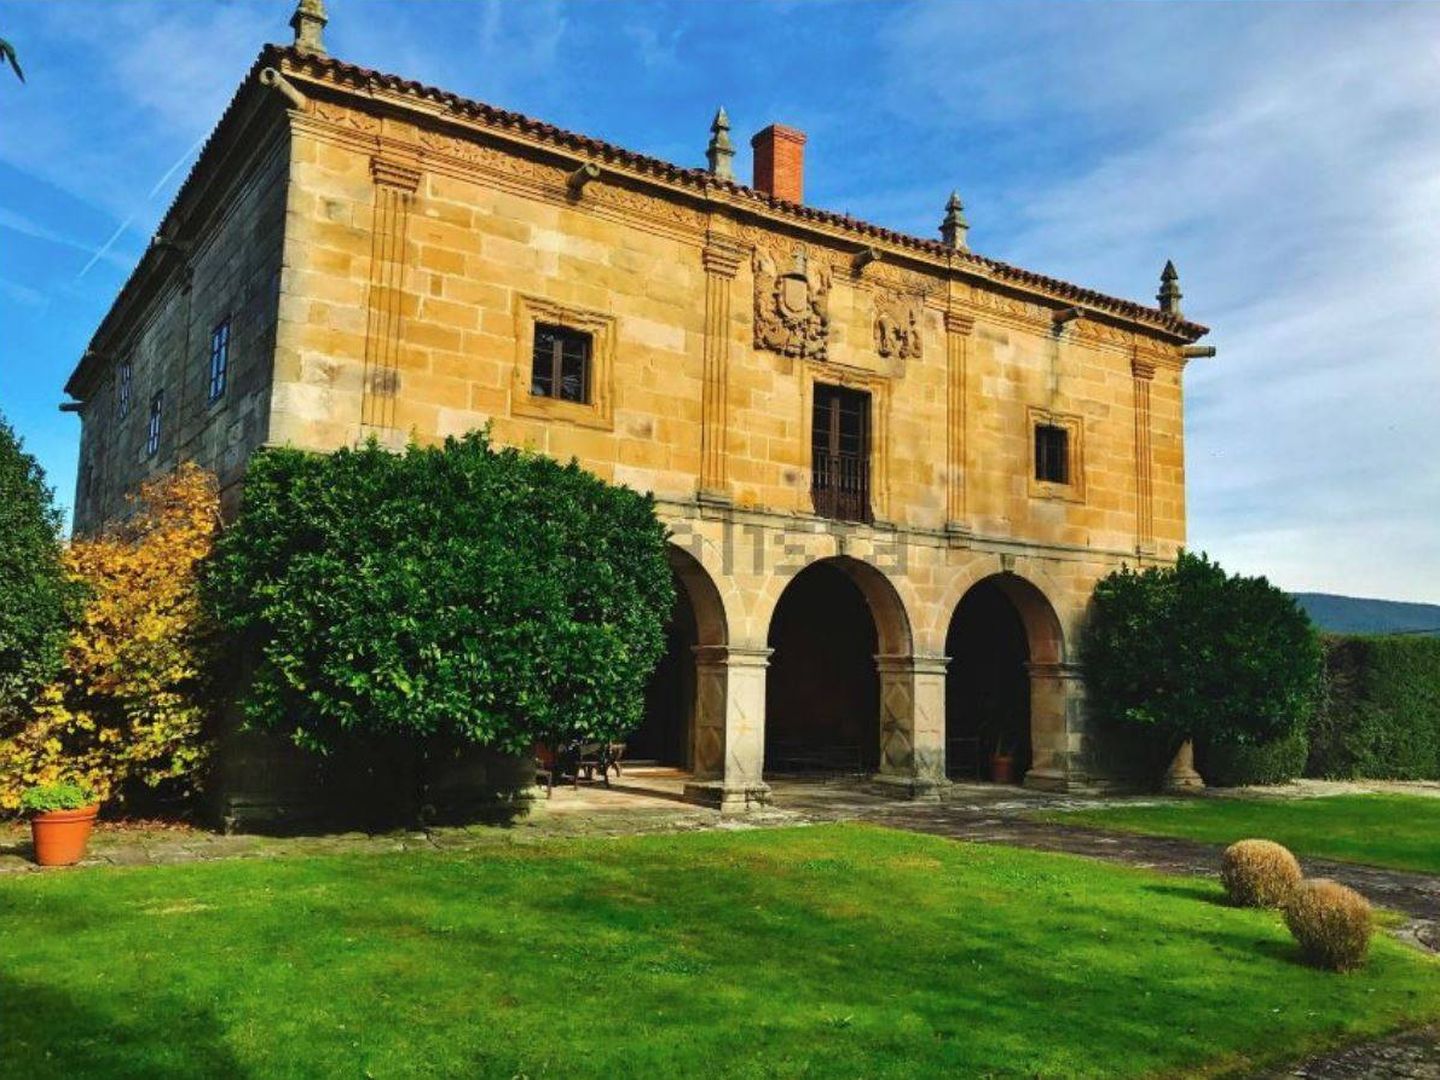 Vea aquí toda la información de esta casa palacio en Cantabria.